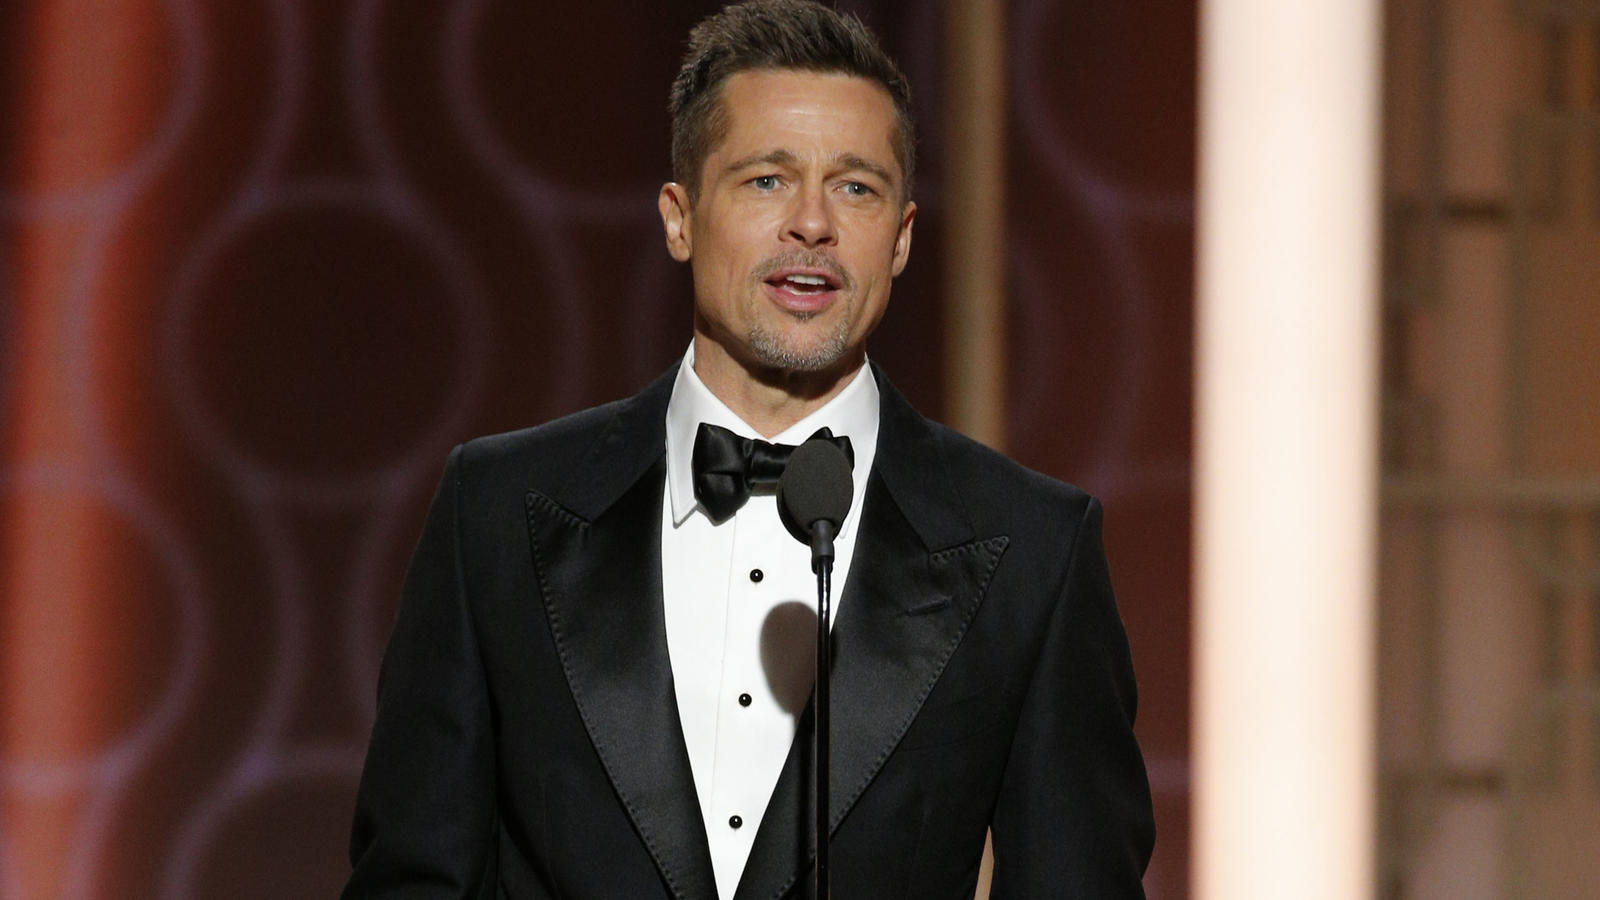 Brad Pitt am 08.01.2017 in Los Angeles (USA) während der 74. Verleihung der Golden Globe Awards auf der Bühne. (ACHTUNG: Nur zur redaktionellen Verwendung in Zusammenhang mit der Berichterstattung über die Golden Globes 2017 und nur bei vol